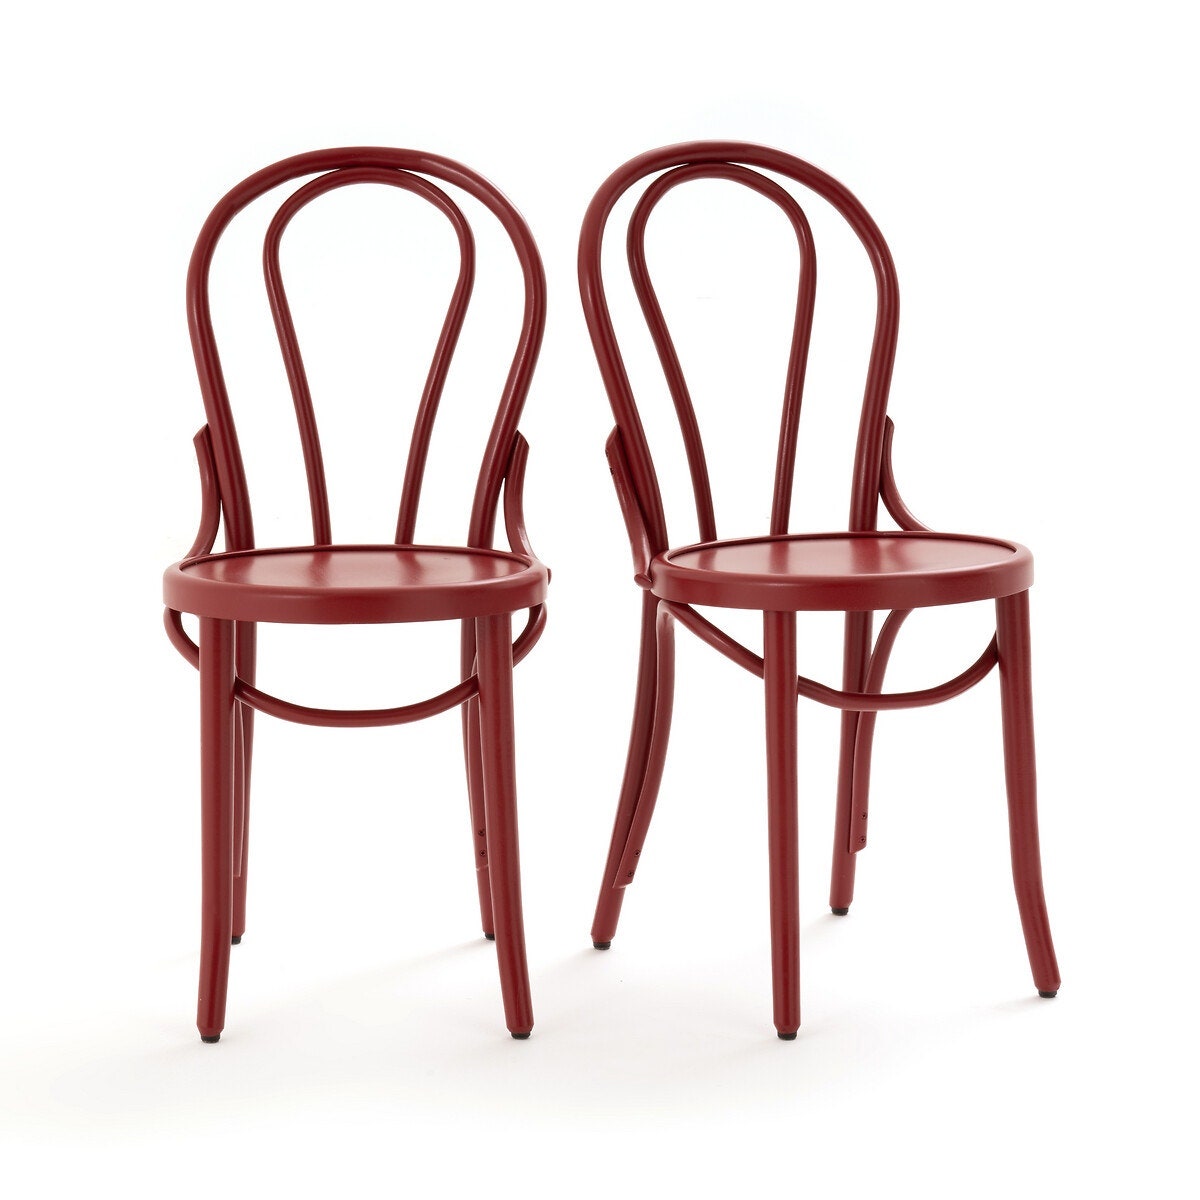 Комплект из двух стульев Bistro 30 186 руб.